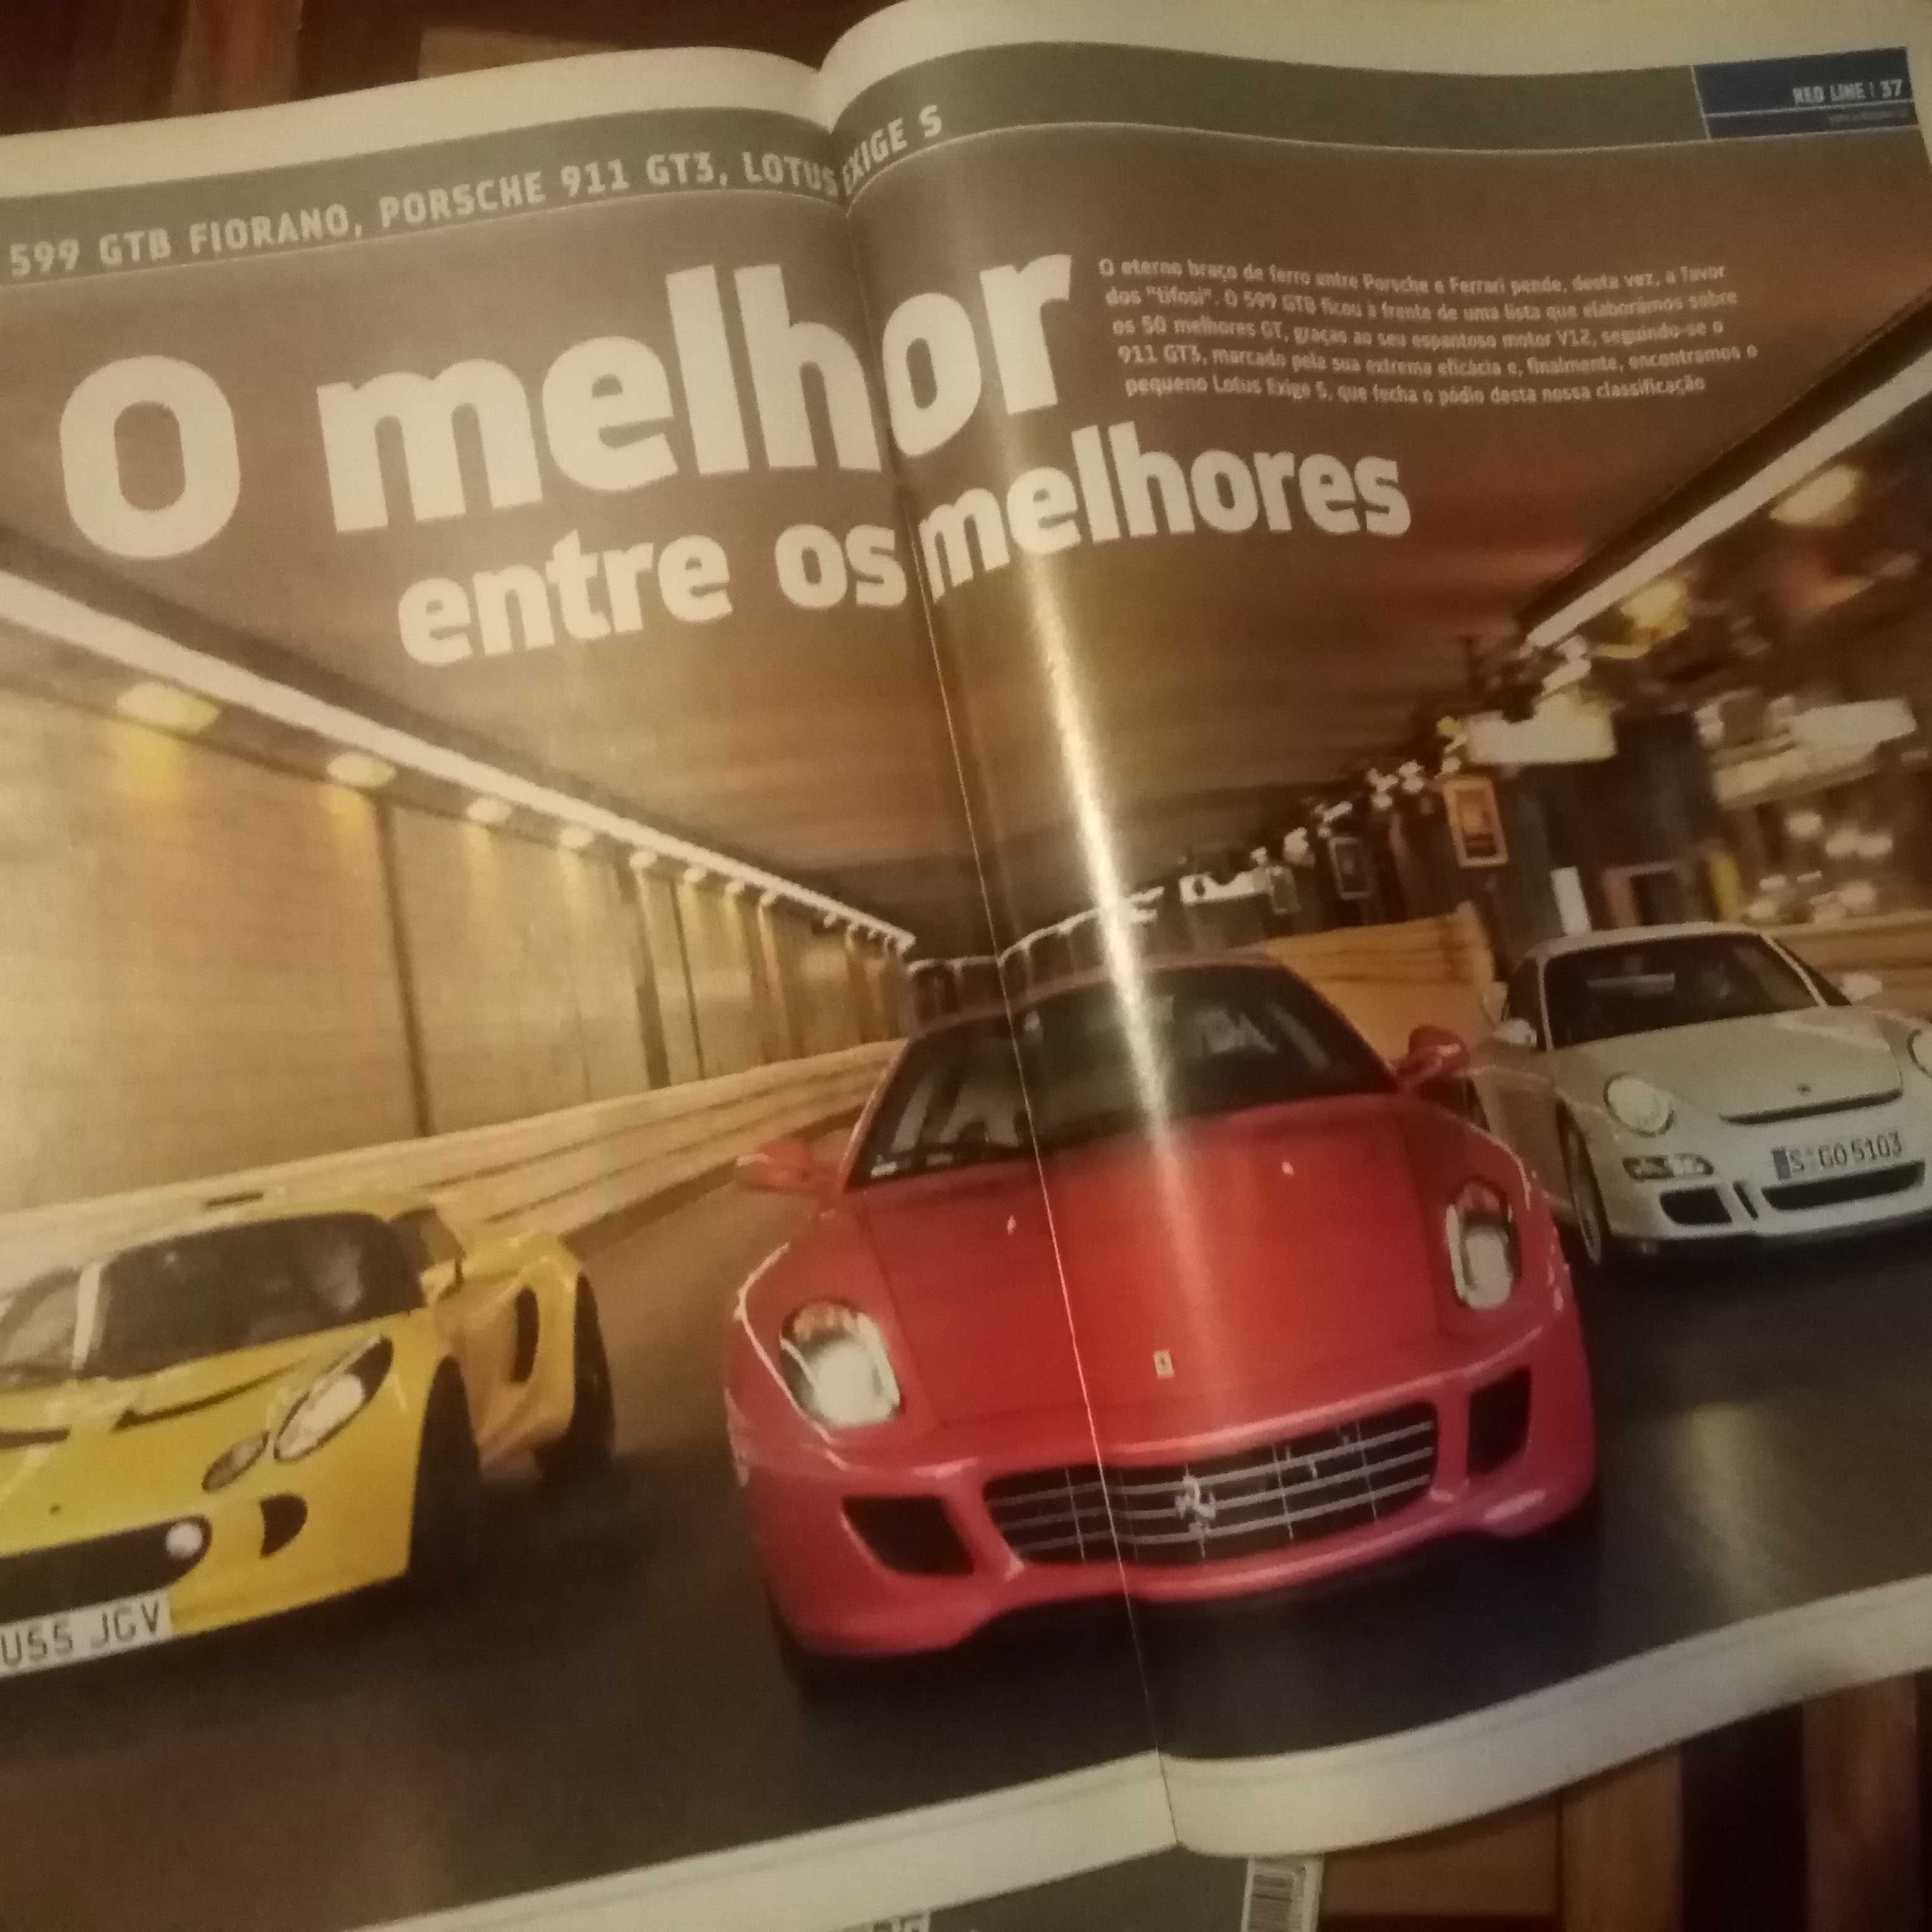 Revistas AutoSport